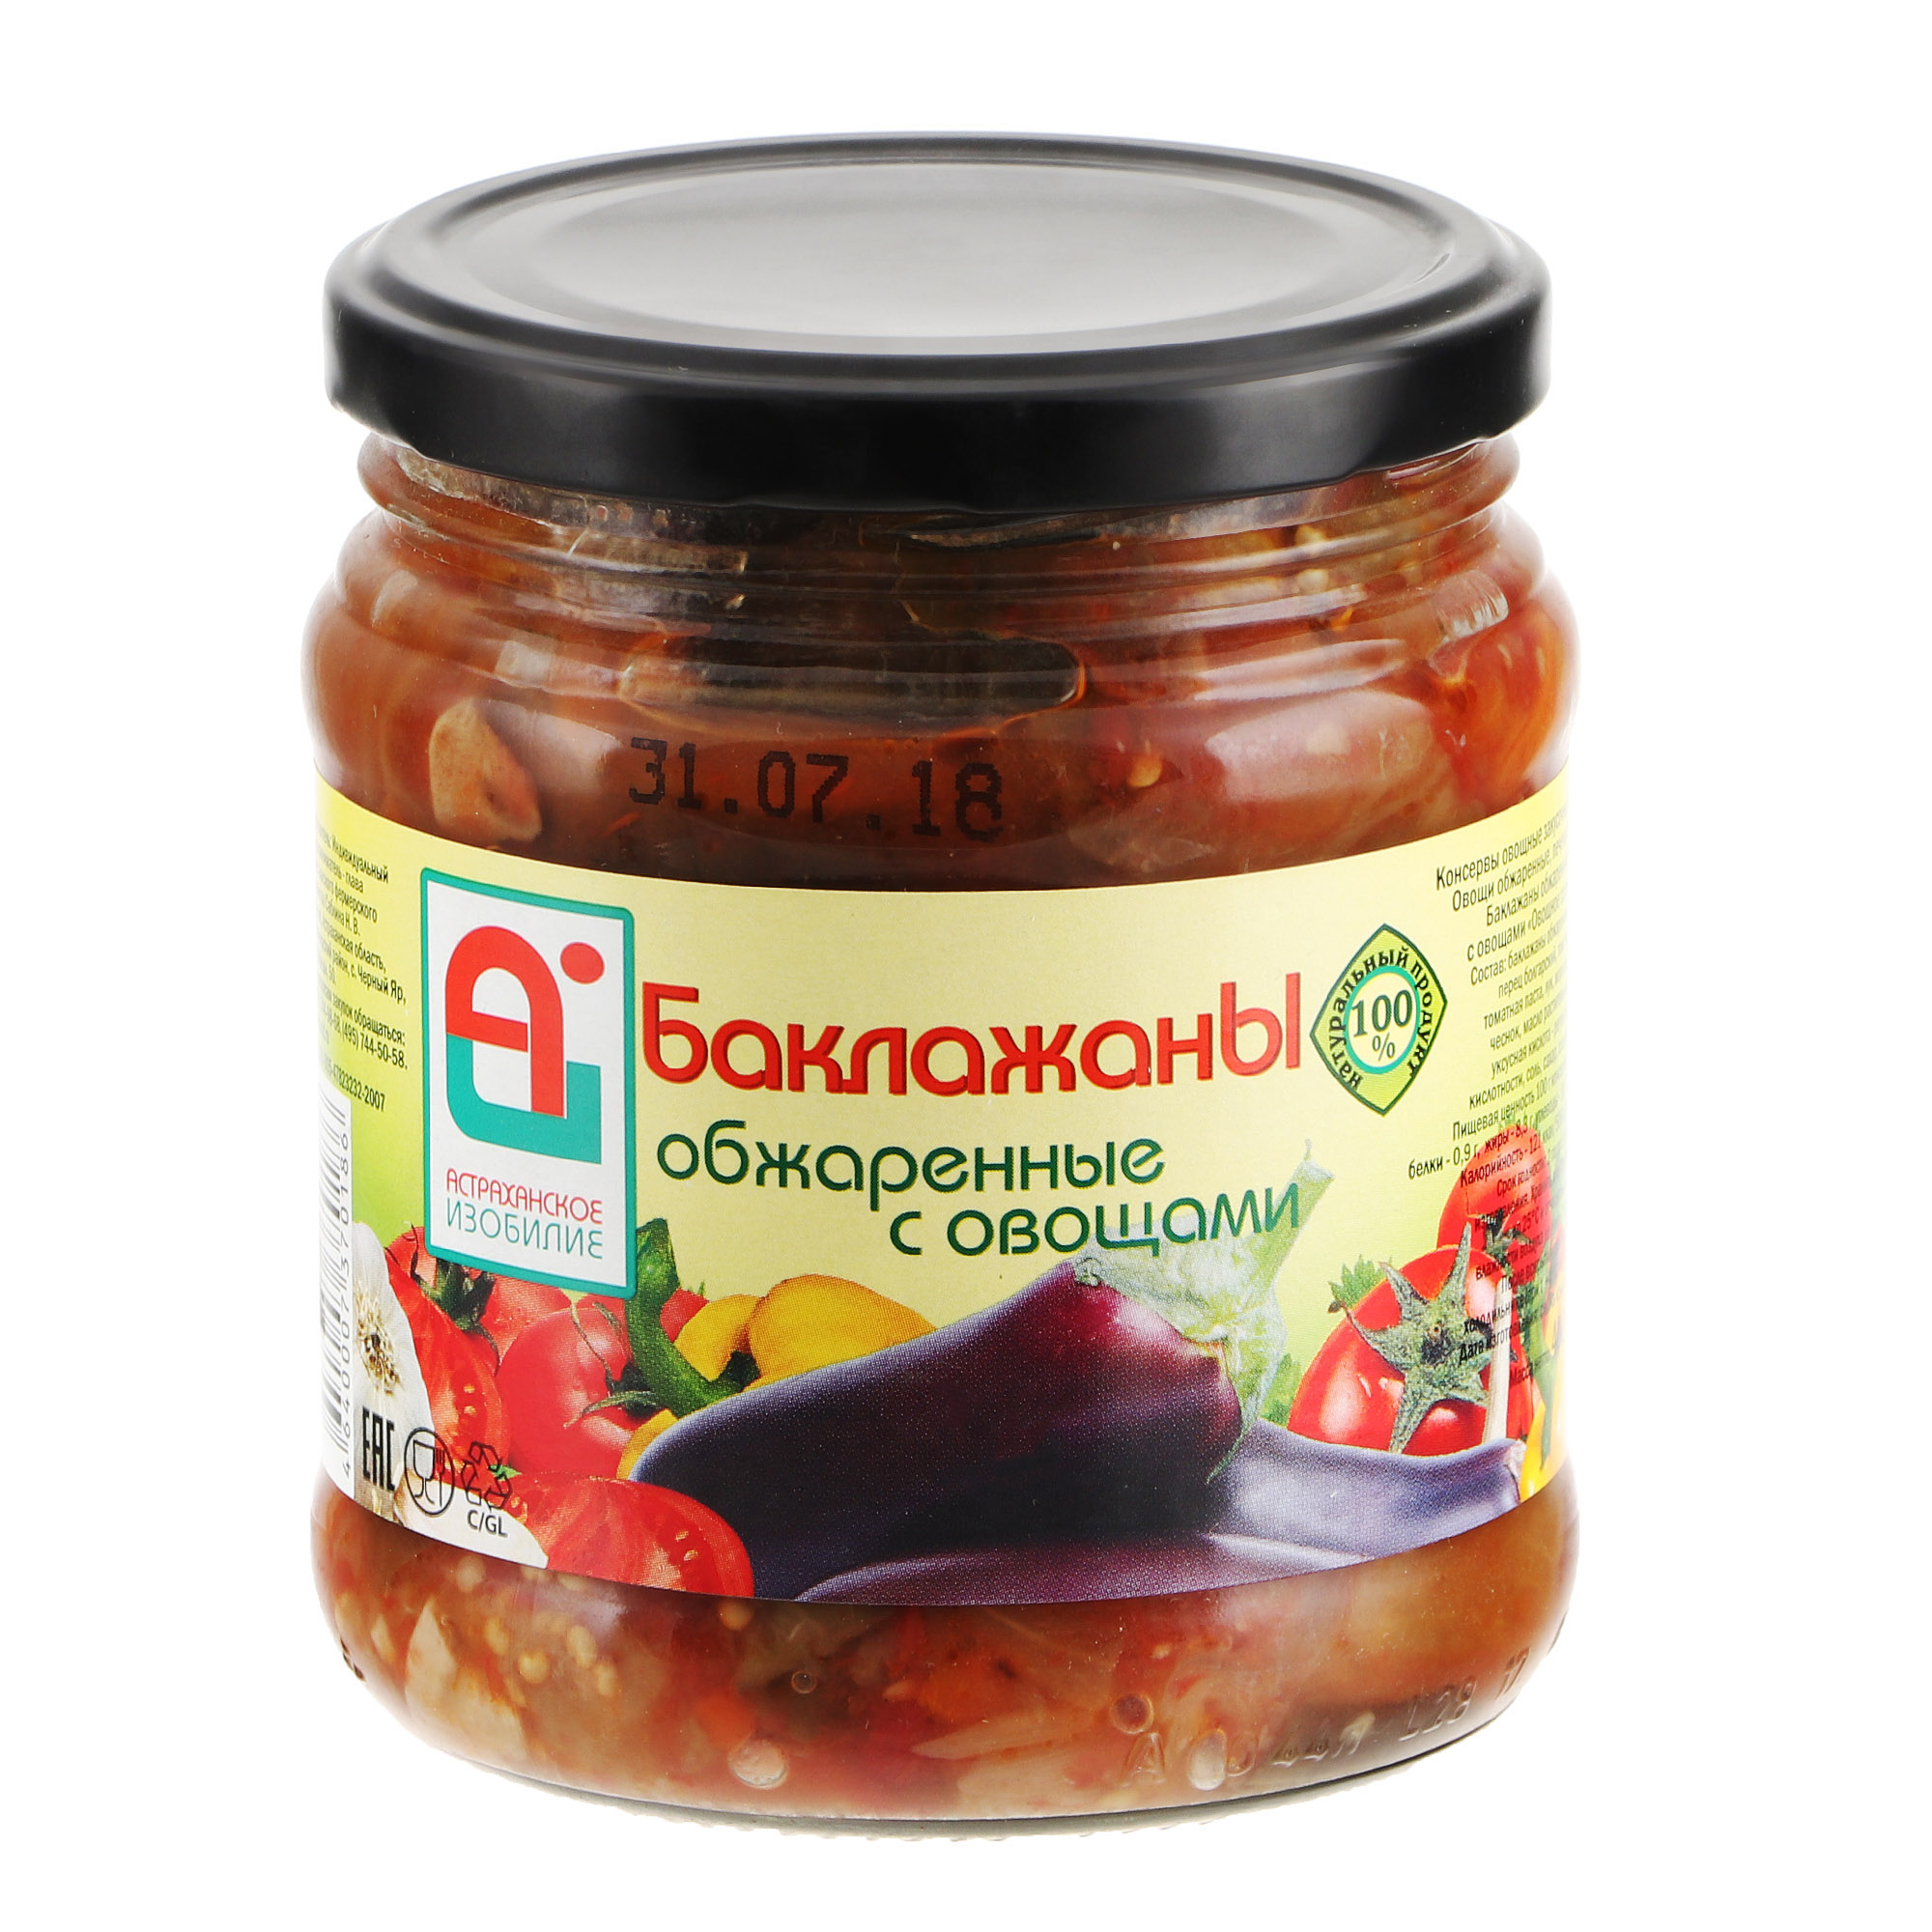 Баклажаны обжаренные Астраханское Изобилие с овощами 500 г